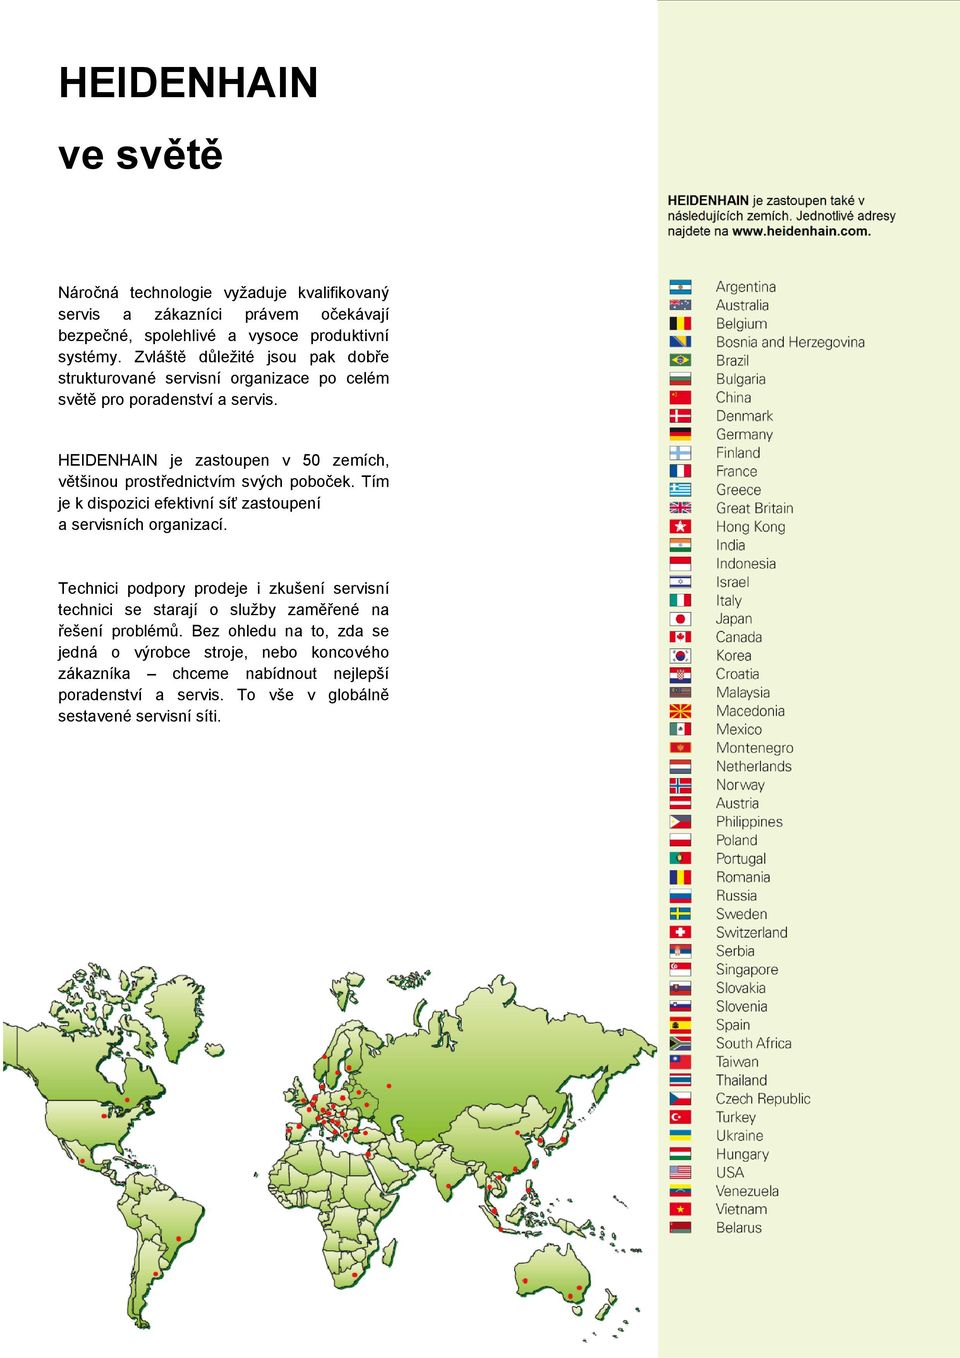 HEIDENHAIN je zastoupen v 50 zemích, většinou prostřednictvím svých poboček. Tím je k dispozici efektivní síť zastoupení a servisních organizací.